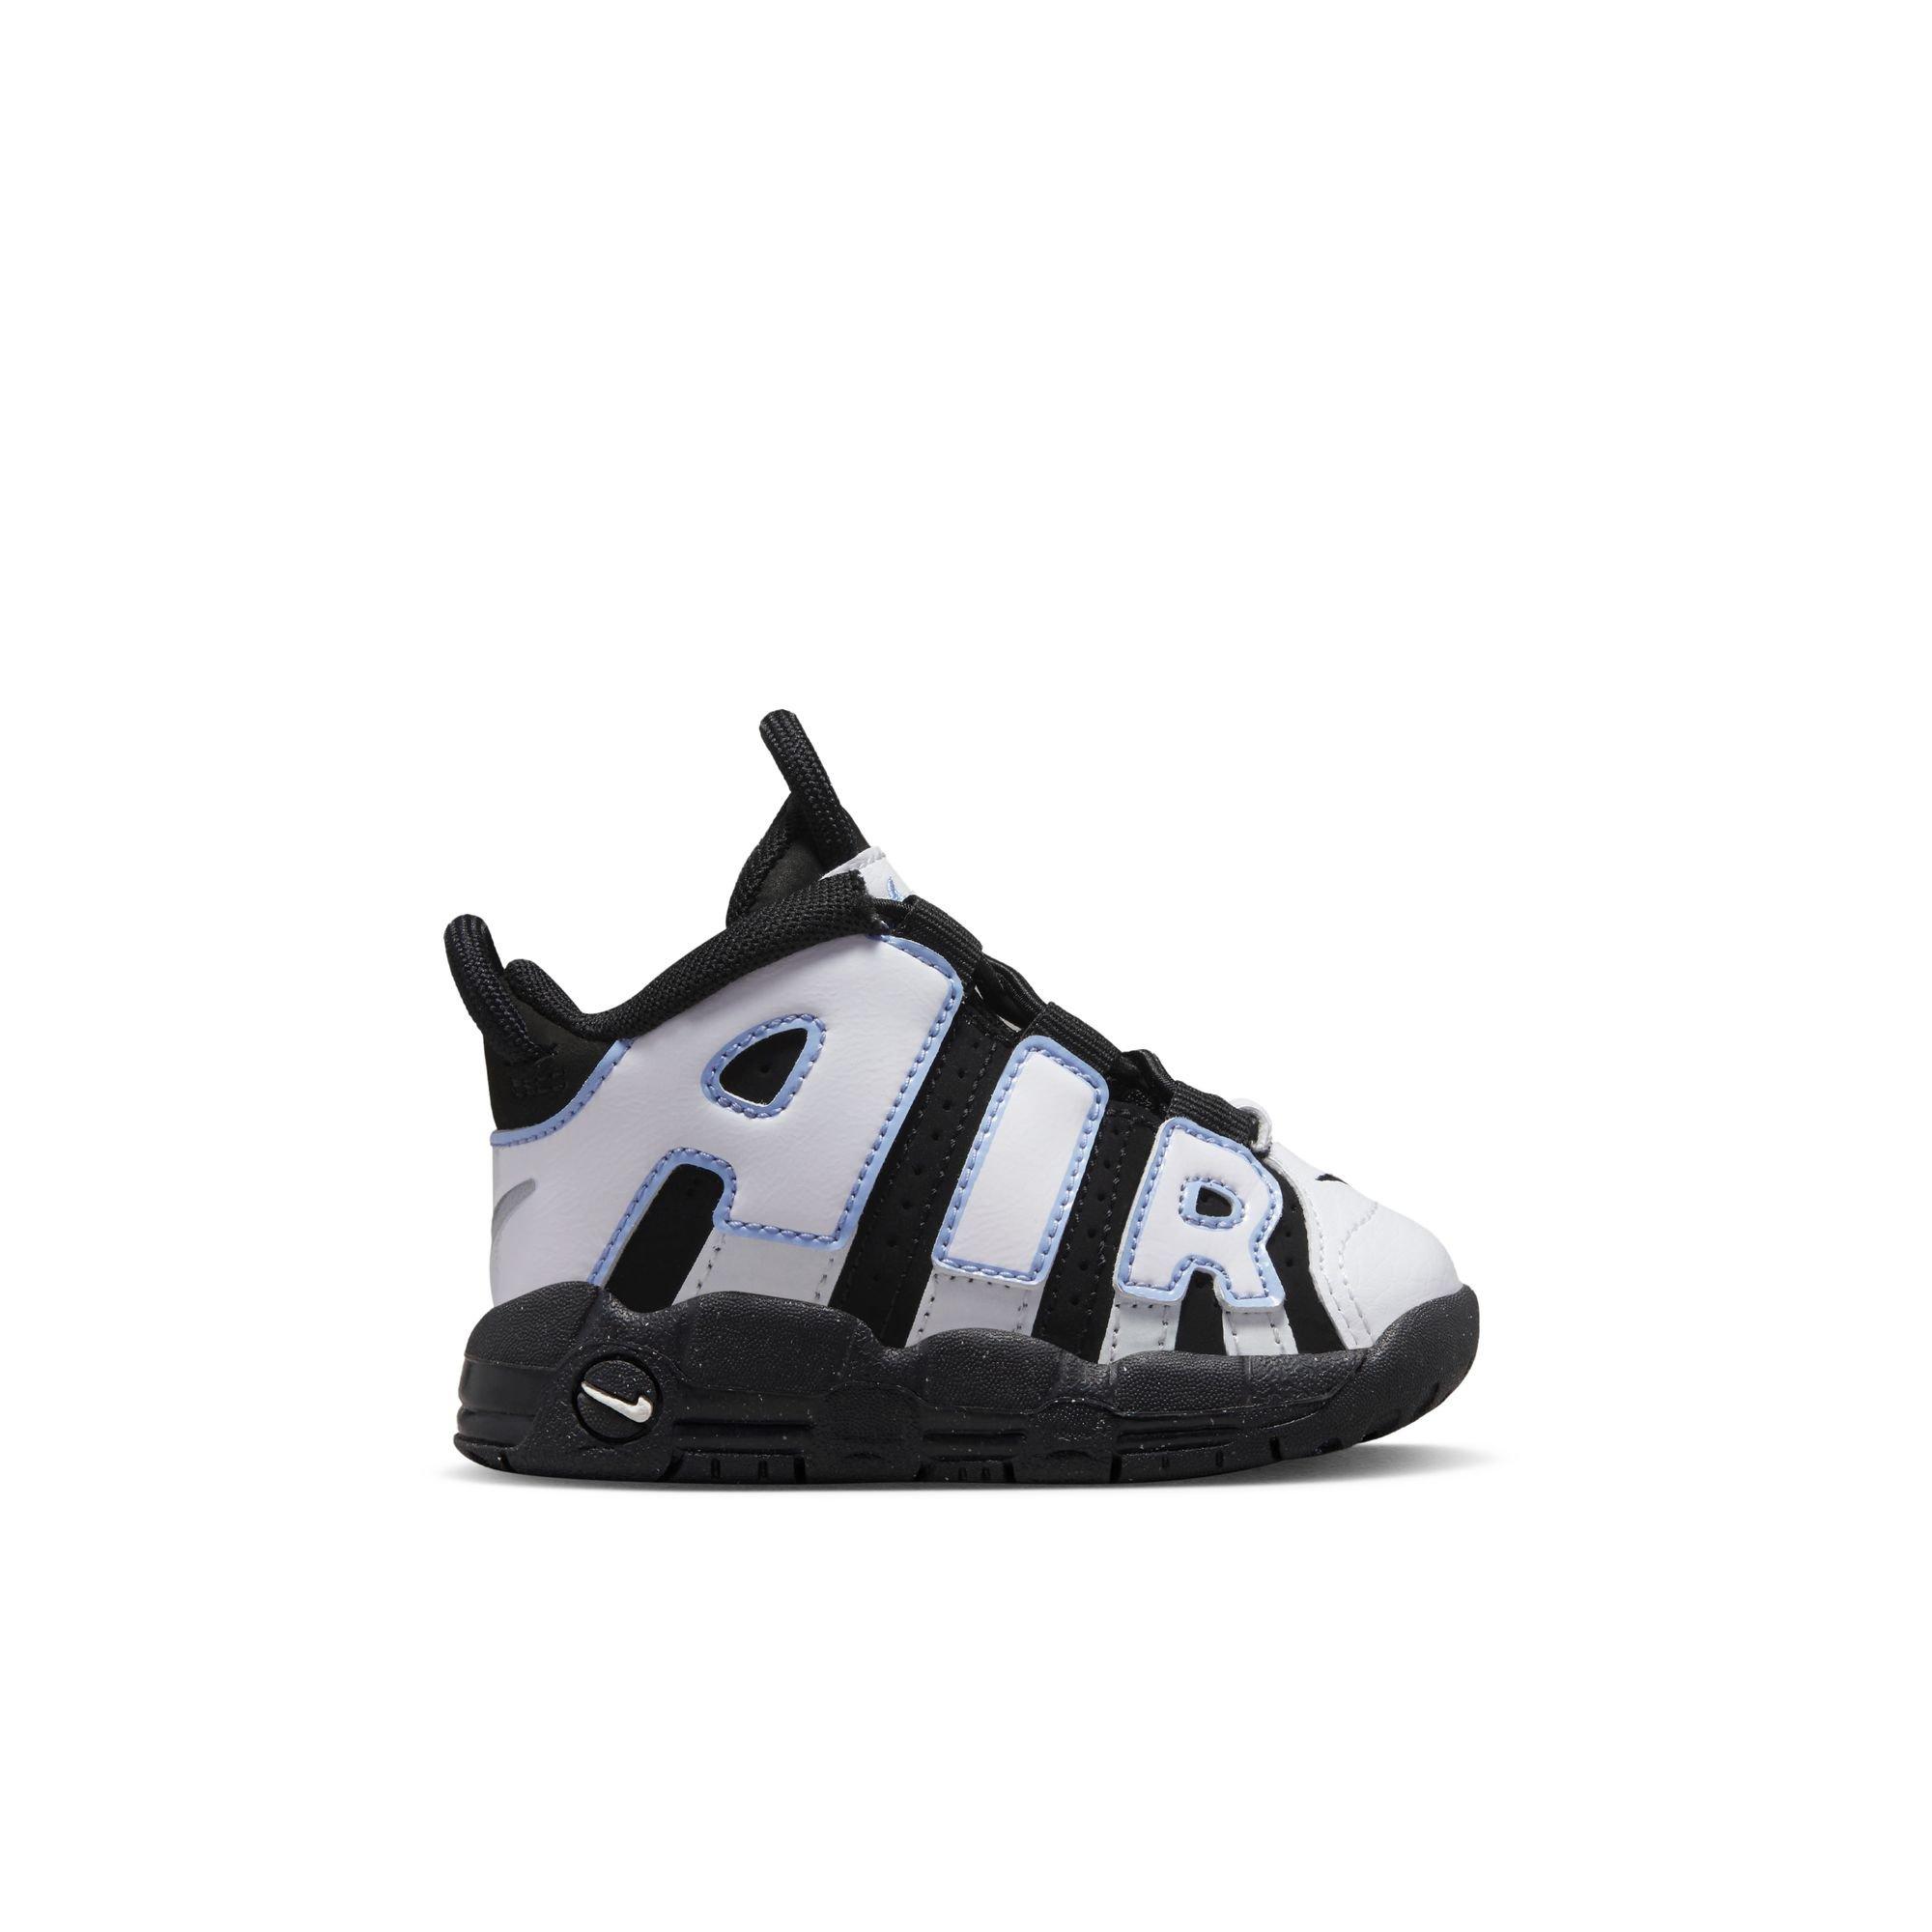 Nike Air More Uptempo '96 Sail/Black Men's Shoe - Hibbett